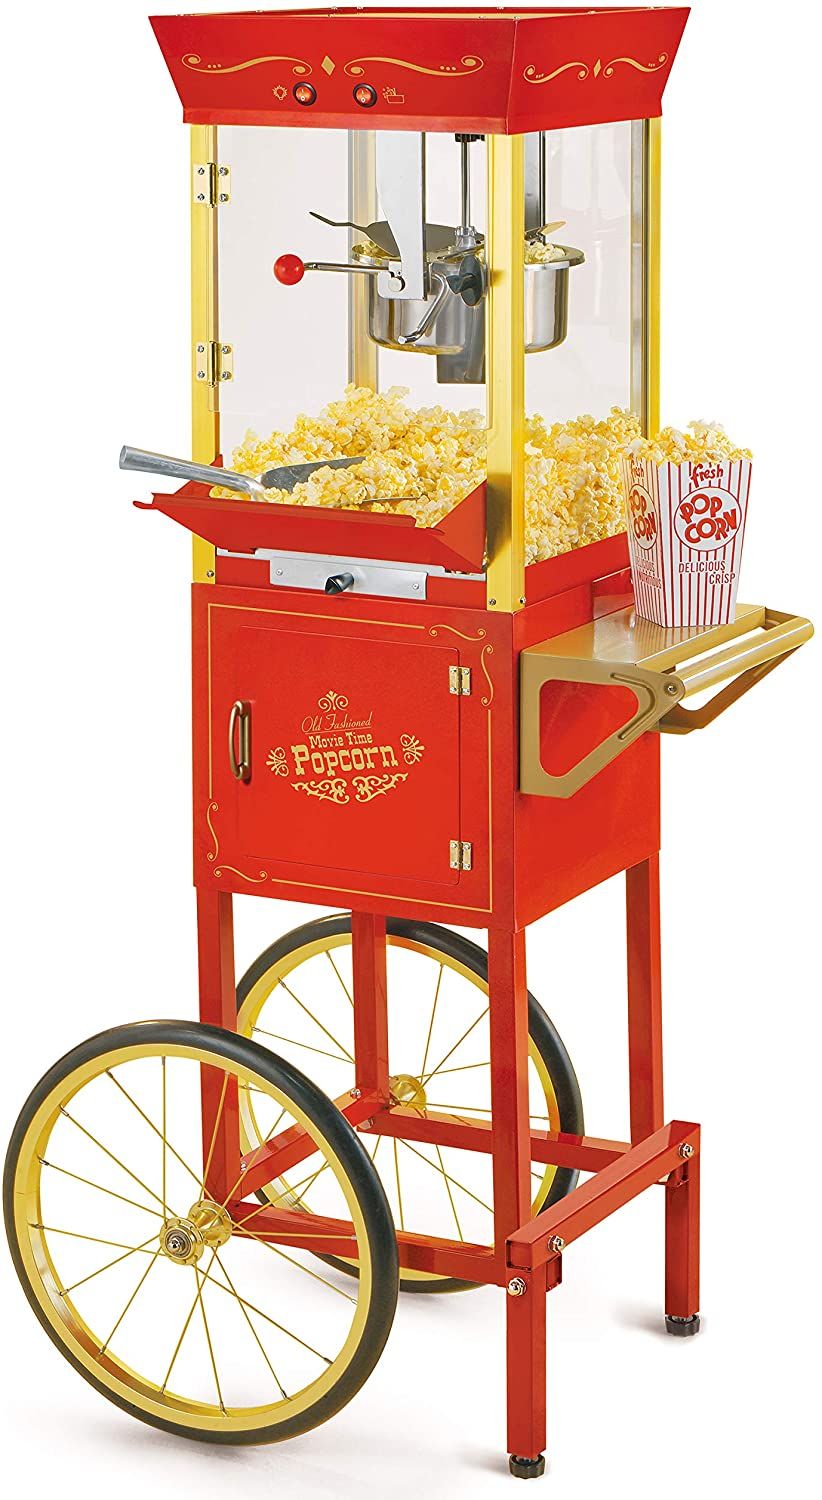 Nostalgia concession popcorn cart